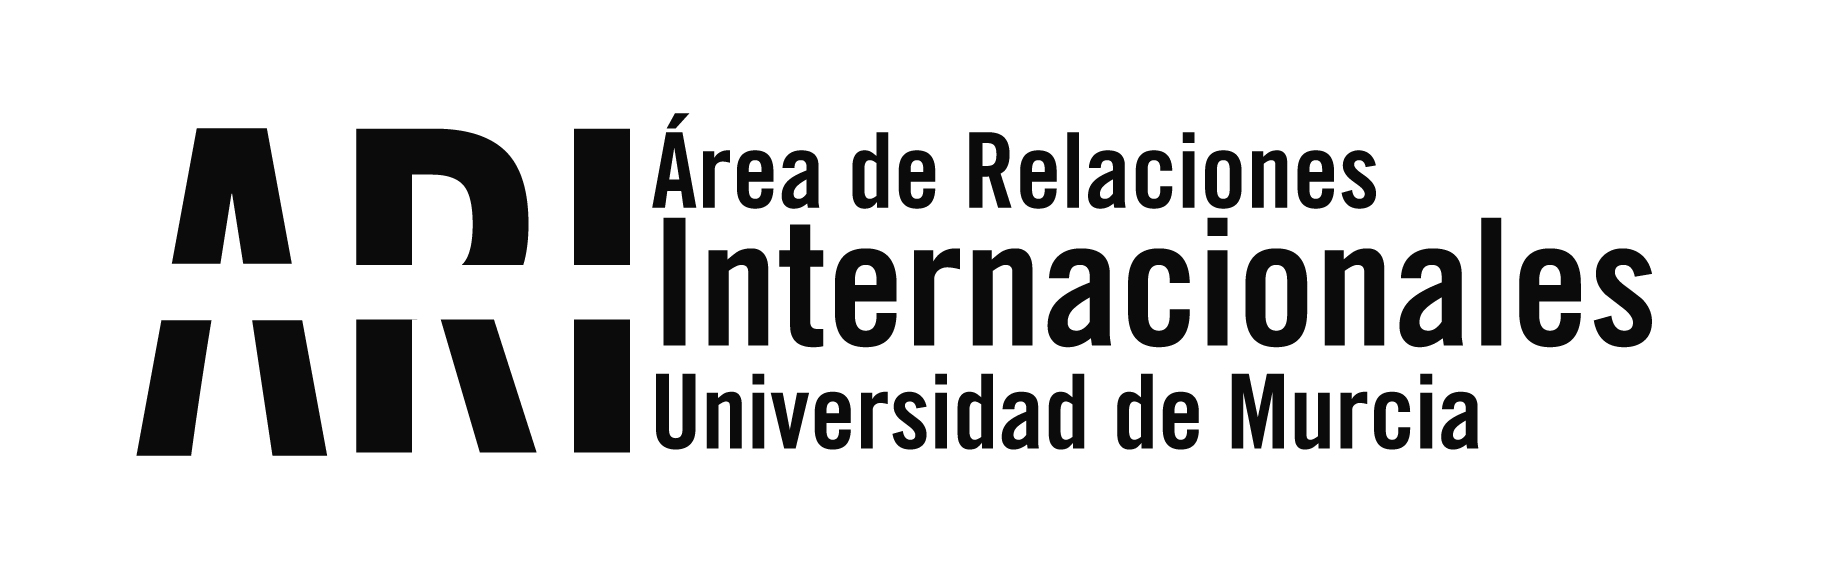 Asistencia a la Reunión de Lanzamiento del proyecto TEMPUS VIETUD en Murcia - España - Área de Relaciones Internacionales